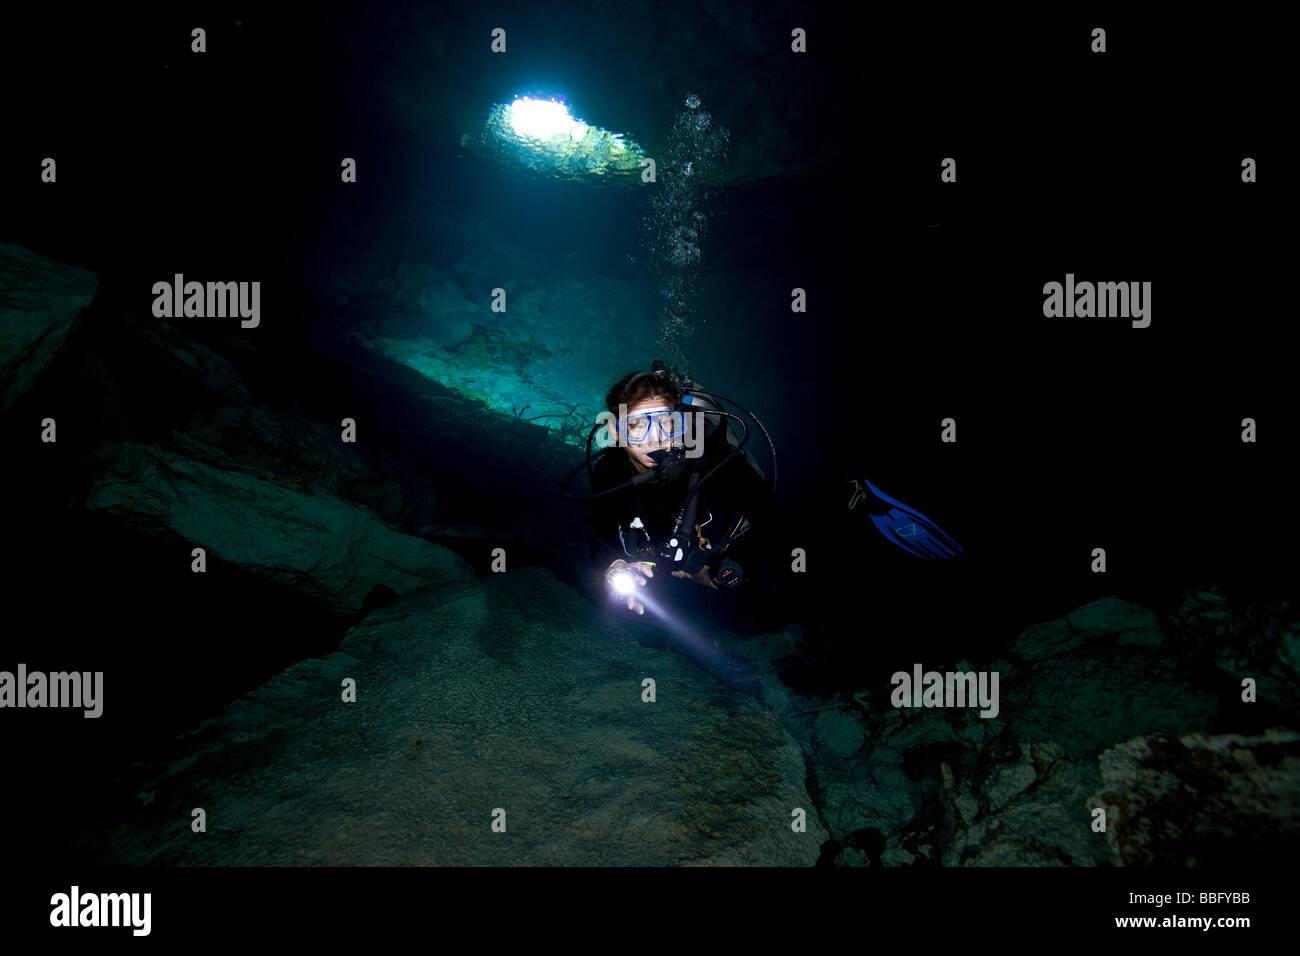 Scuba diver in cavern. Stock Photo